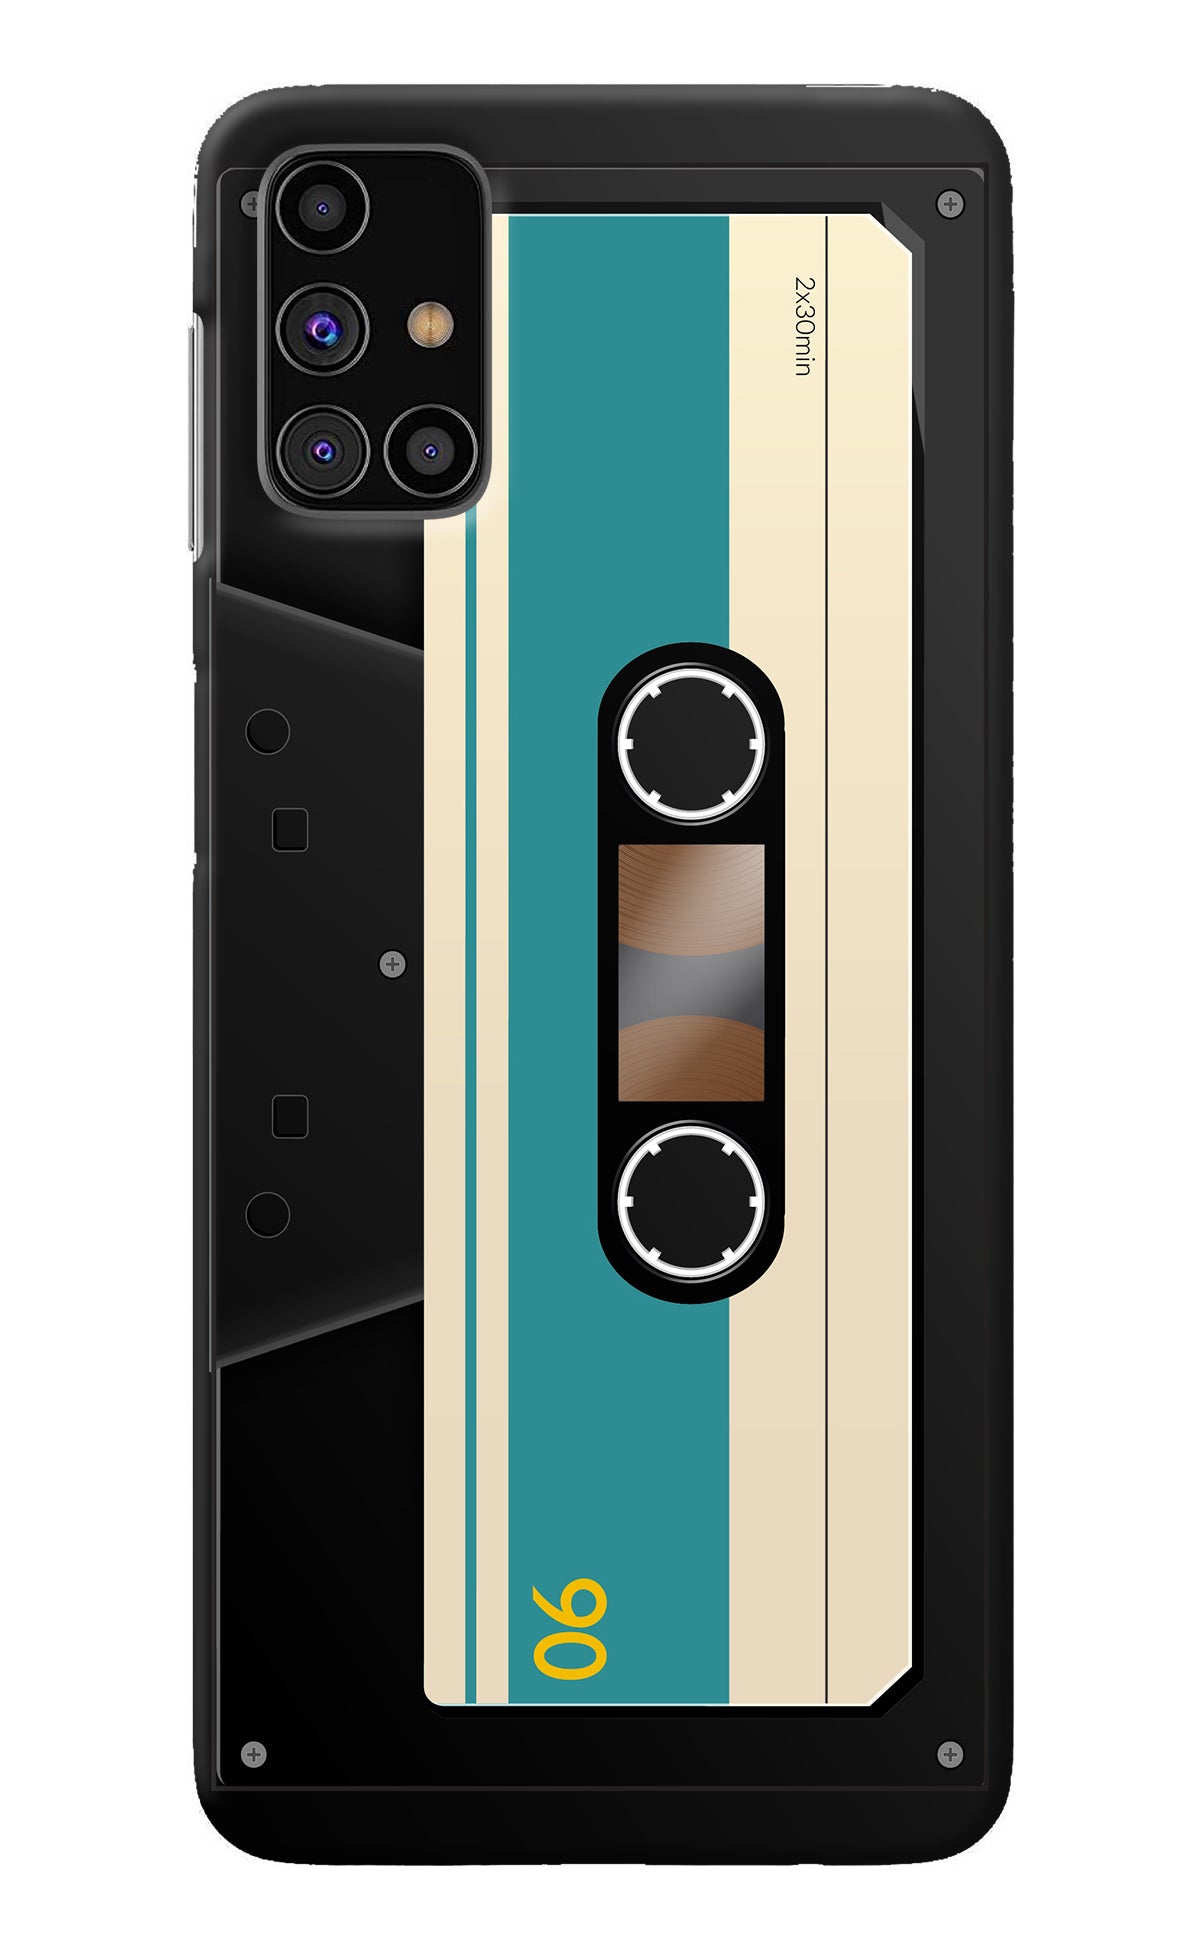 Cassette Samsung M31s Back Cover